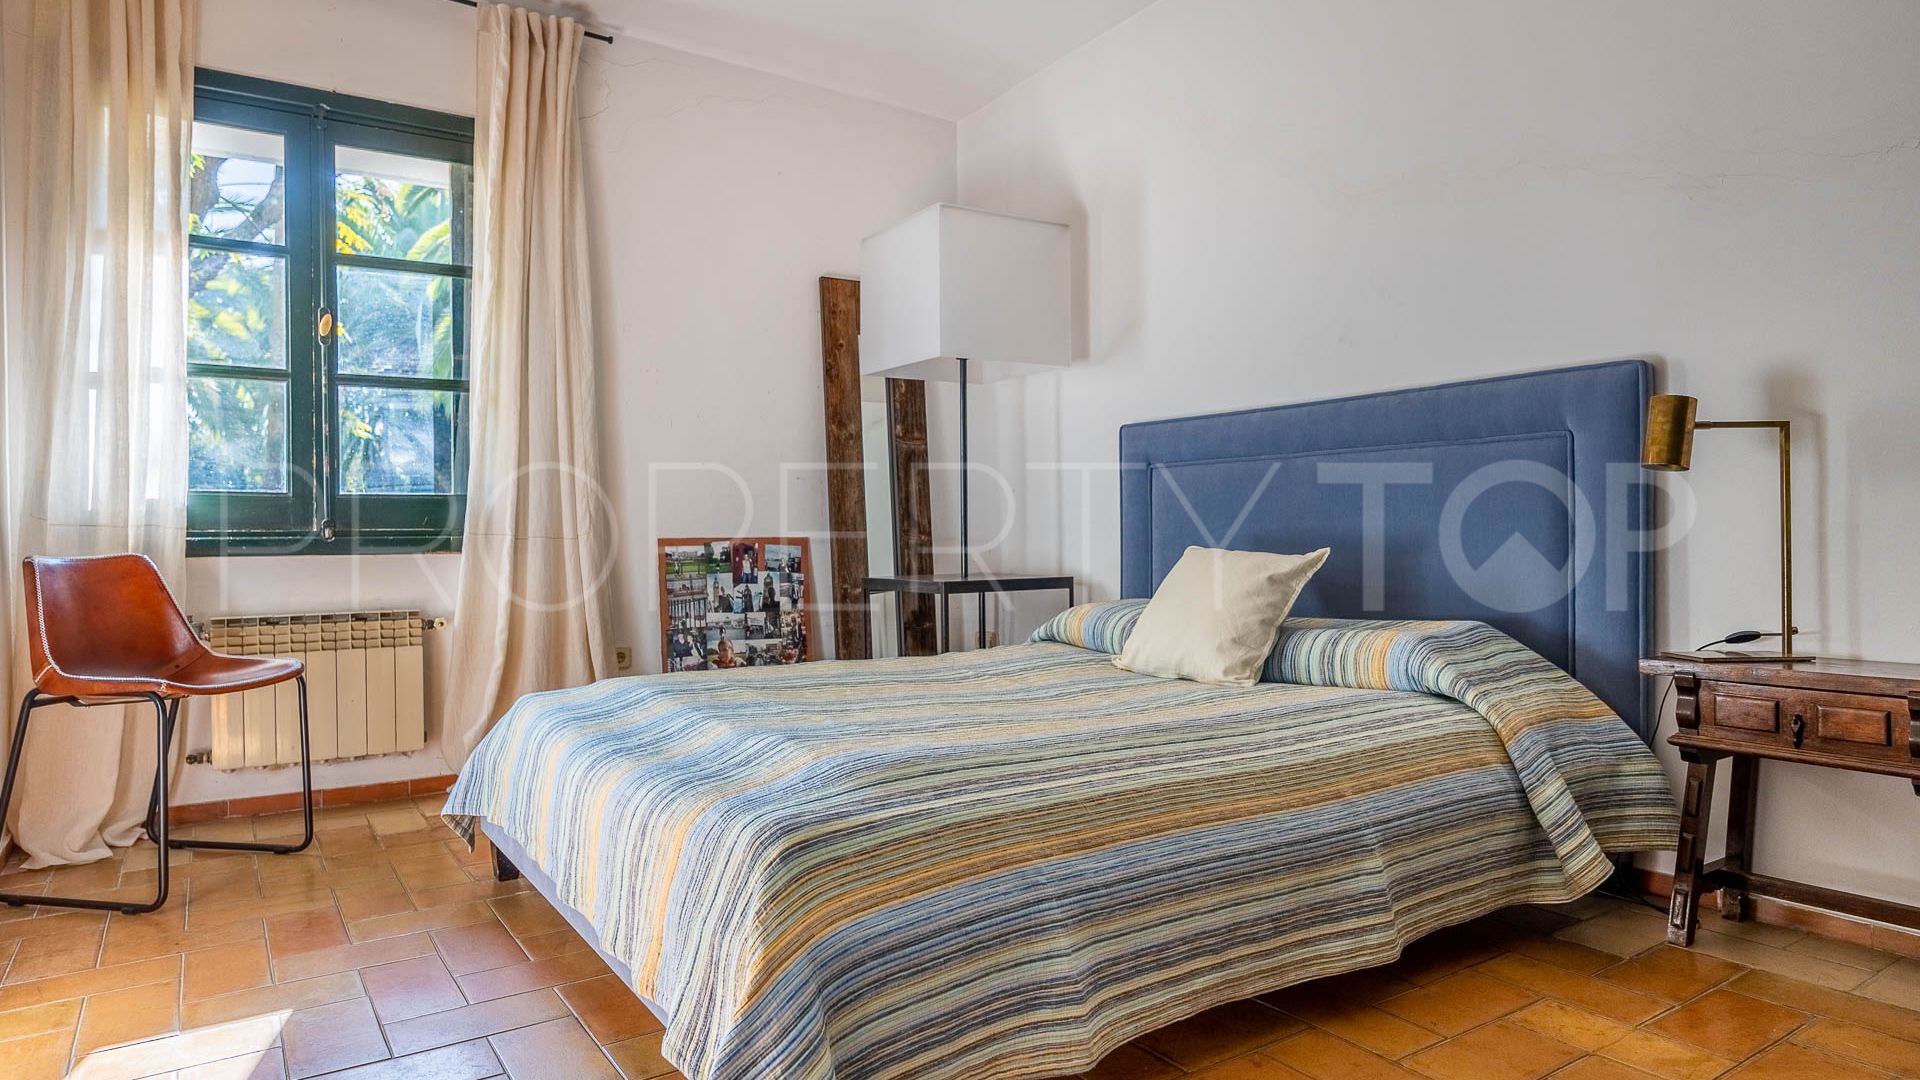 6 bedrooms house in Mairena del Aljarafe for sale